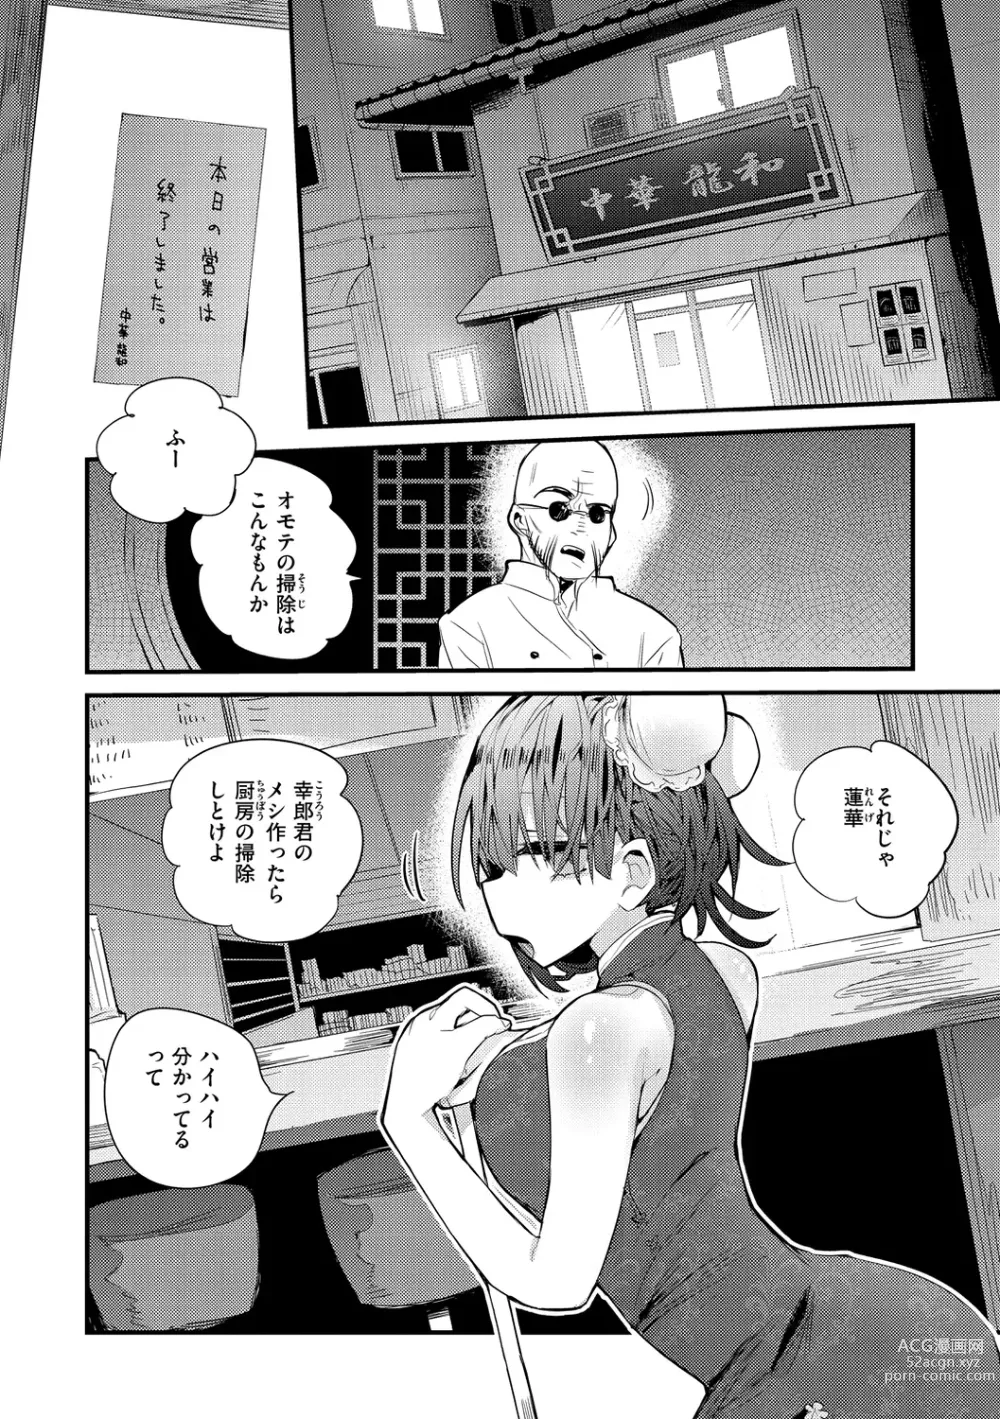 Page 6 of manga New Tawawa Paradise